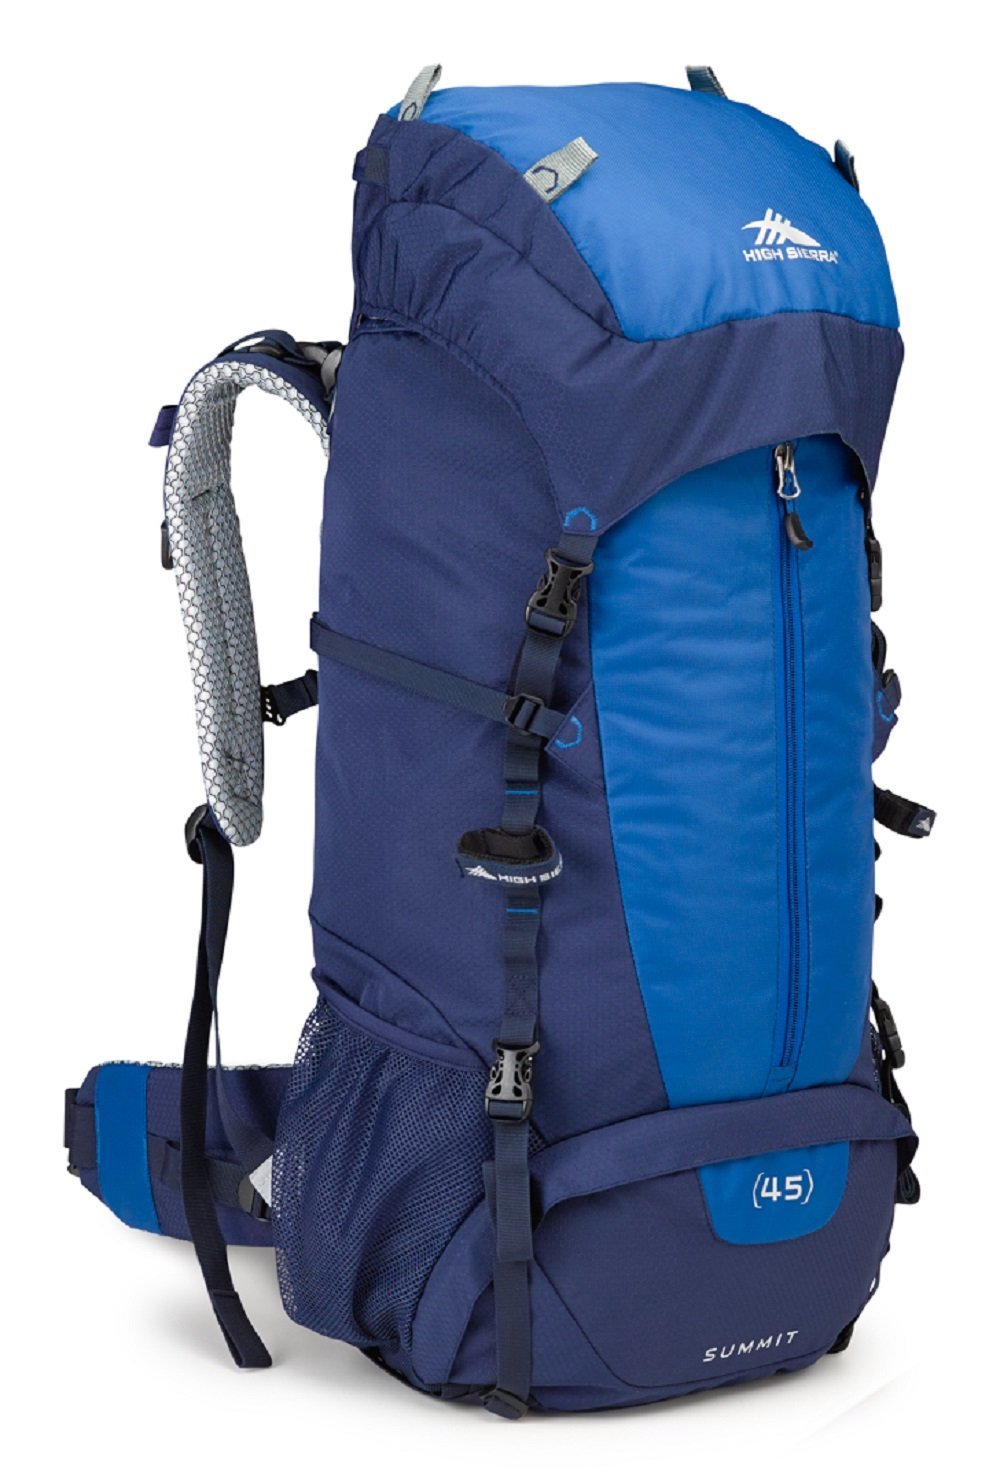 high sierra, backpack, camping, hiking, backpacking